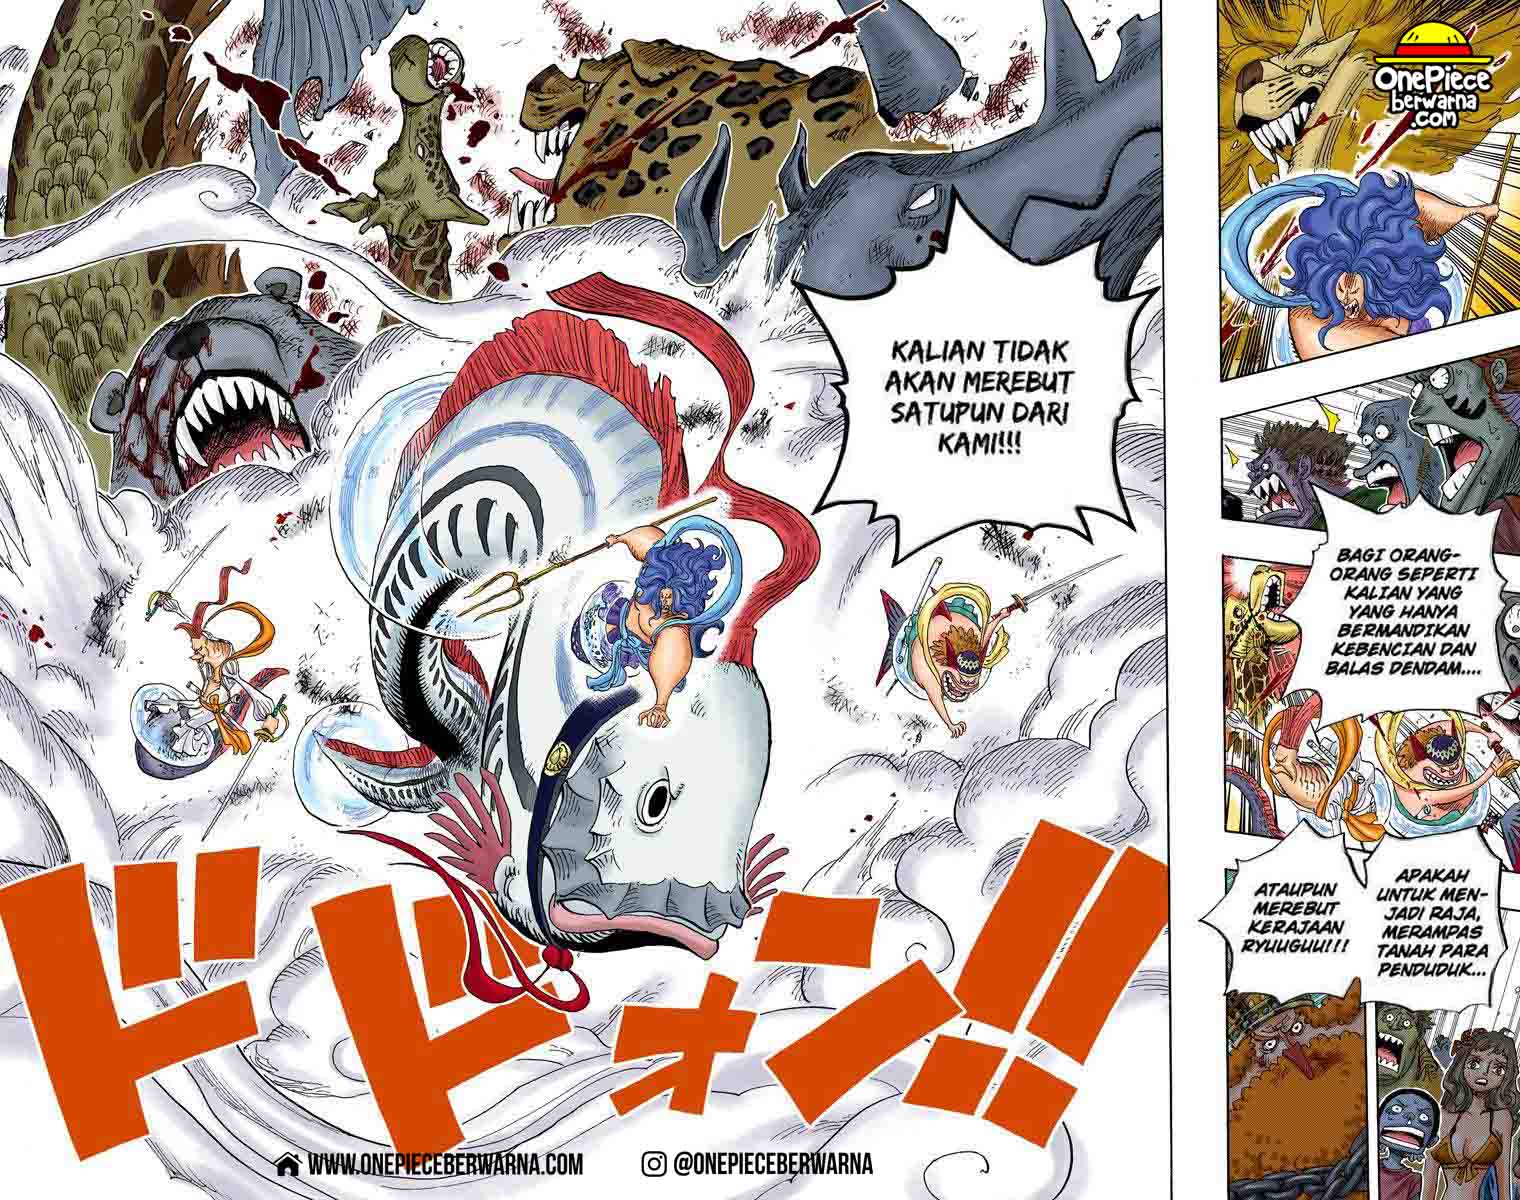 One Piece Berwarna Chapter 631